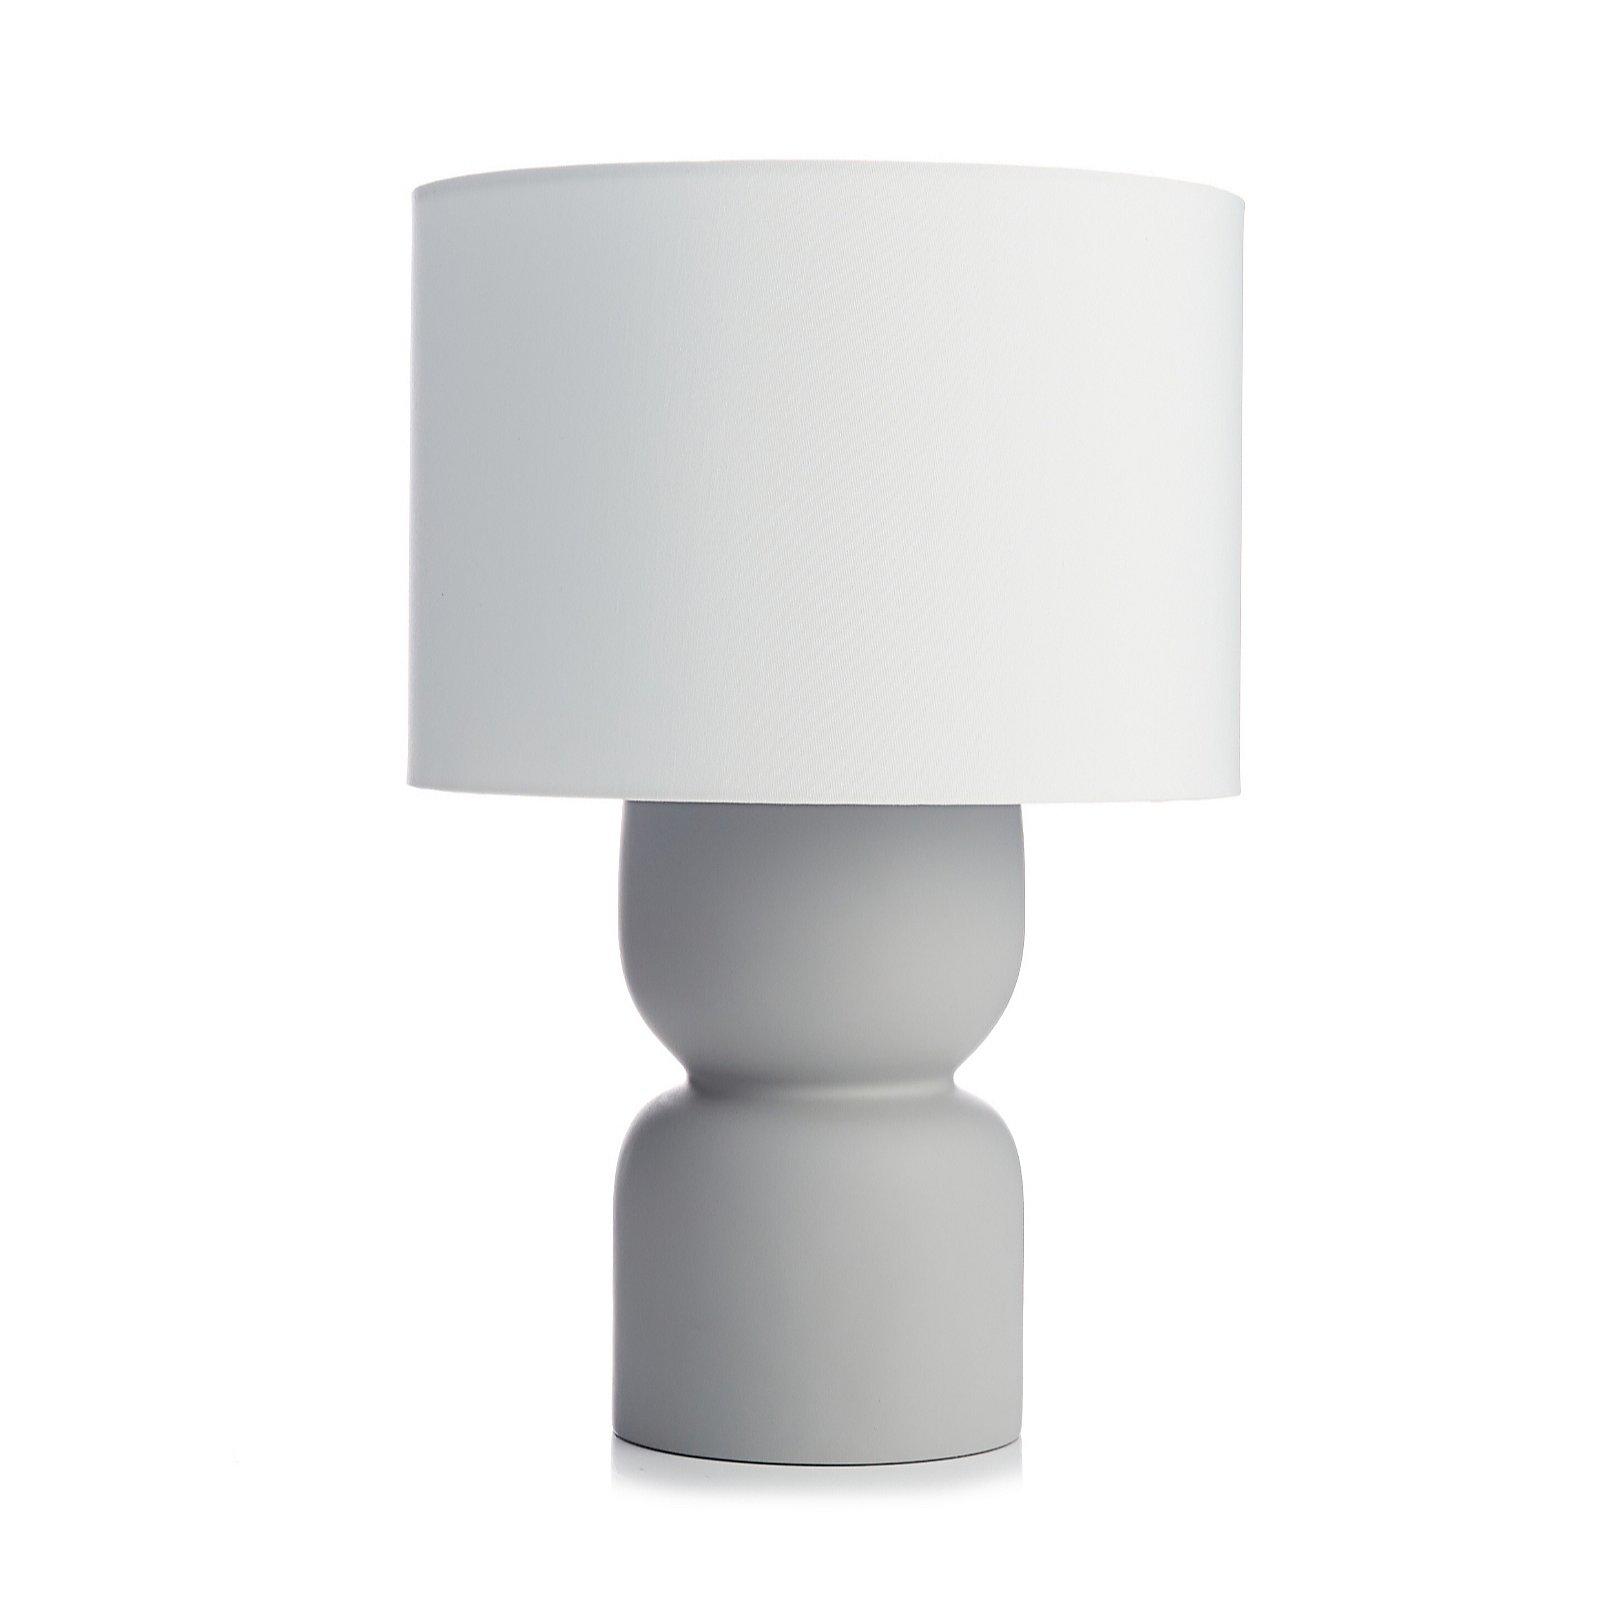 Designer Cement Table Lamp - K by Kelly Hoppen